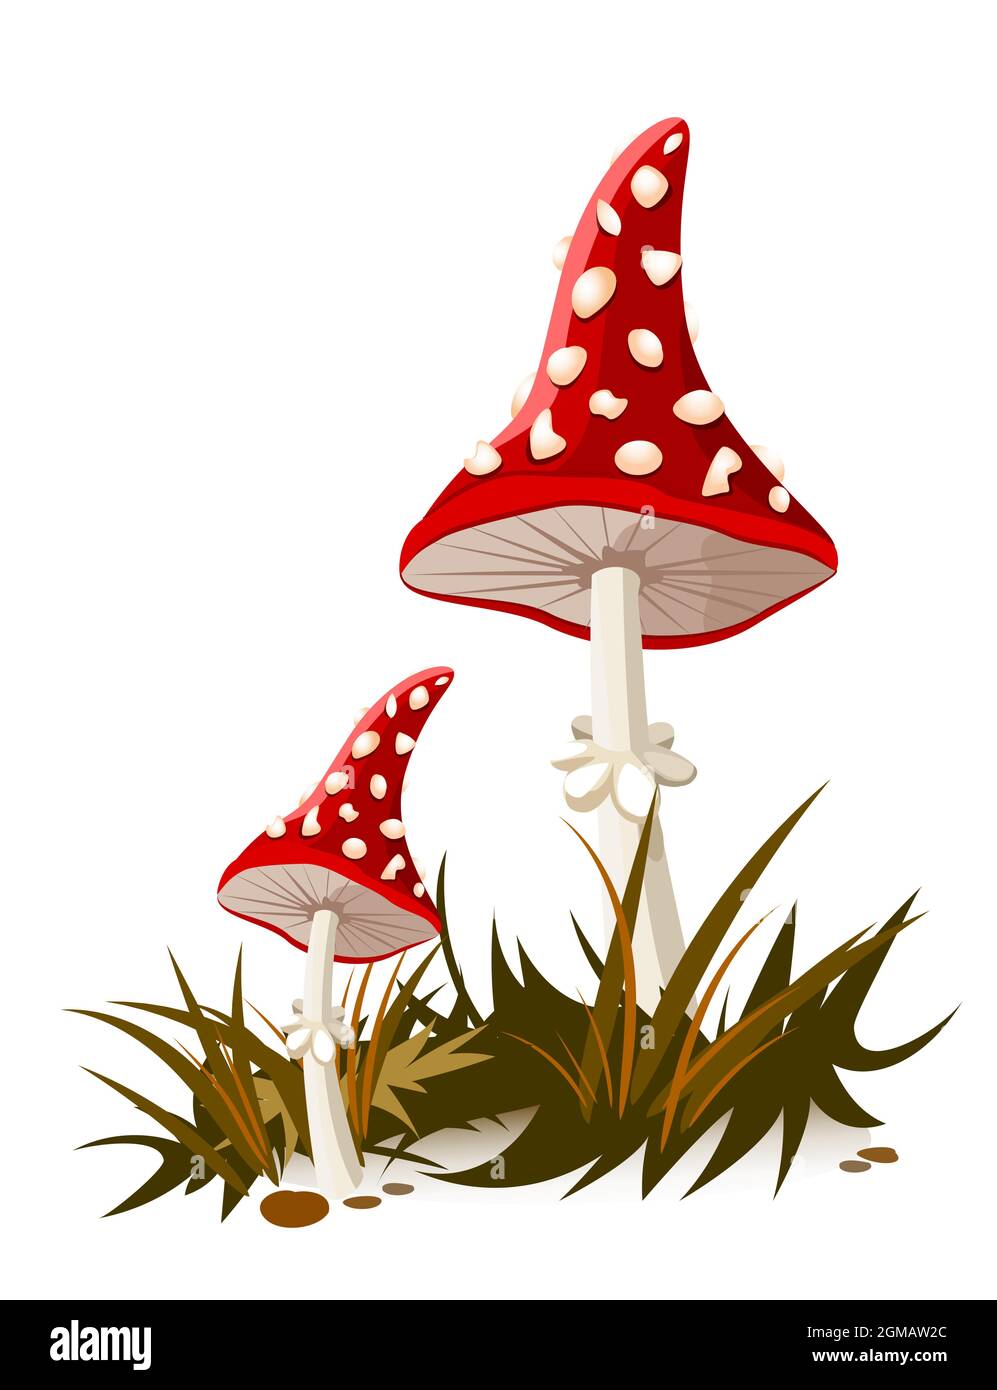 Bellissimi funghi cartoni animati con un cappello rosso e macchie bianche. Fungo Amanita. Illustrazione Vettoriale